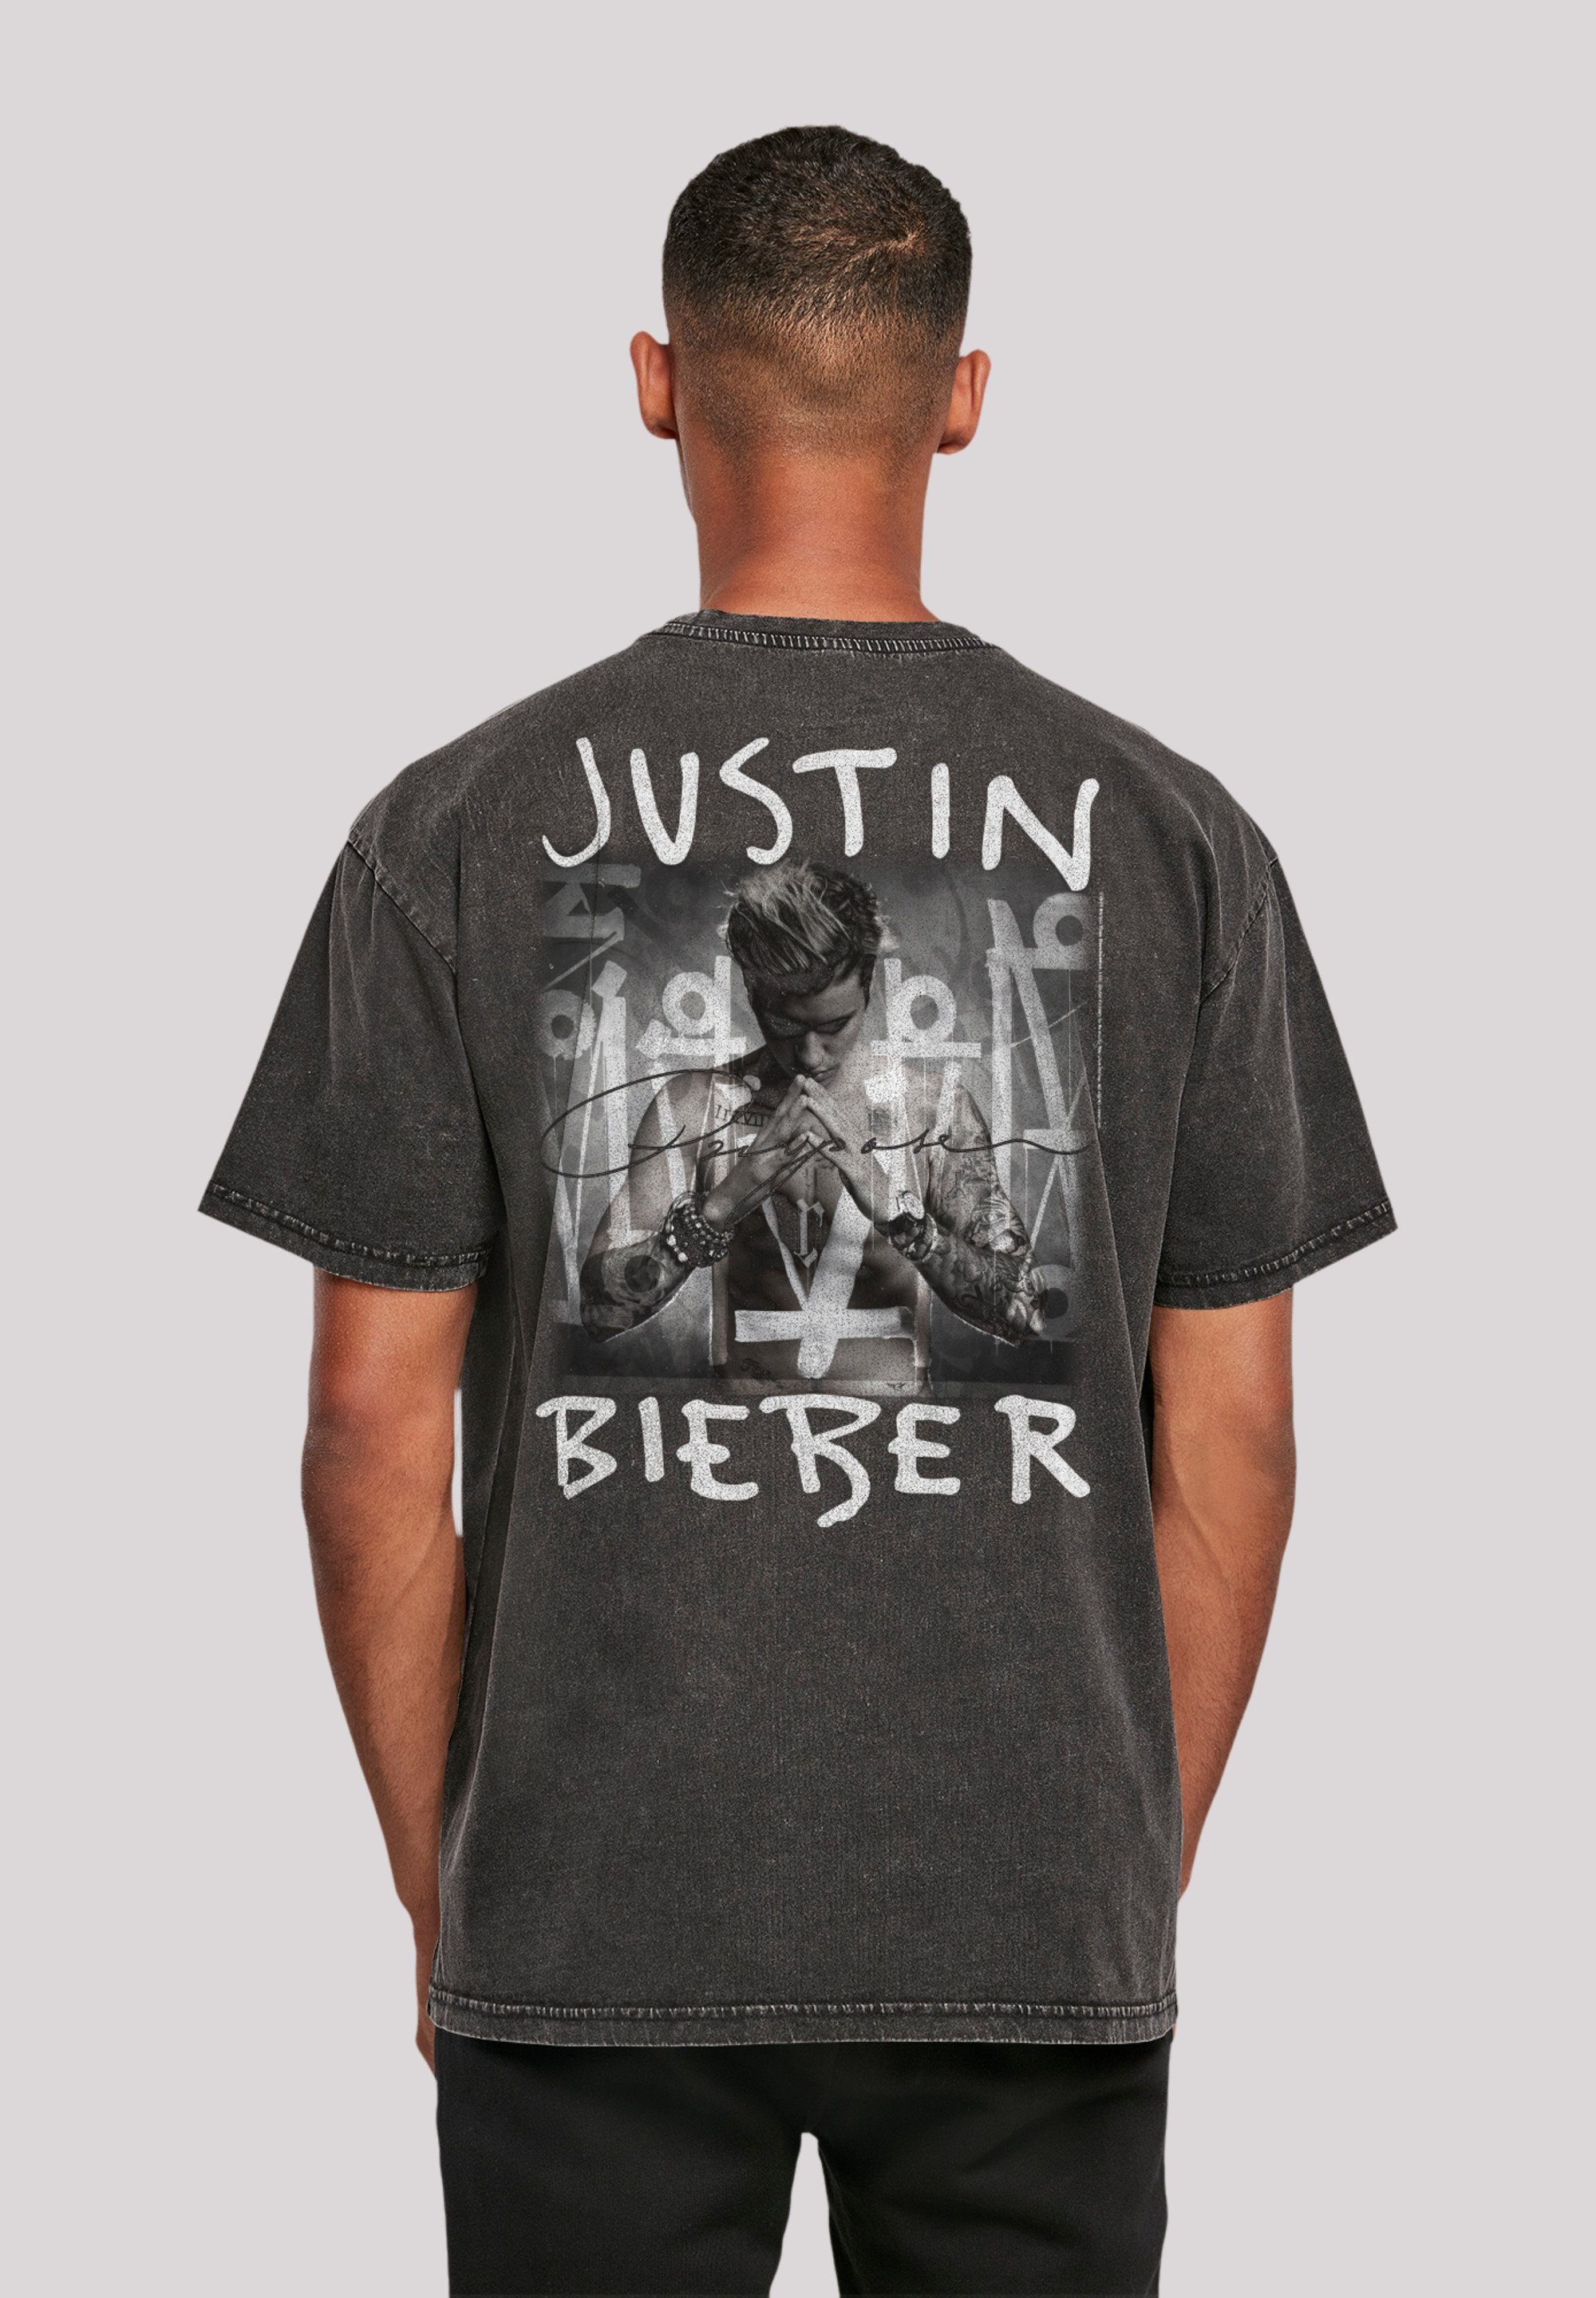 Rock Cover Qualität, By Musik, Purpose Premium Bieber Album Baumwollqualität Off, T-Shirt Hochwertige F4NT4STIC Justin